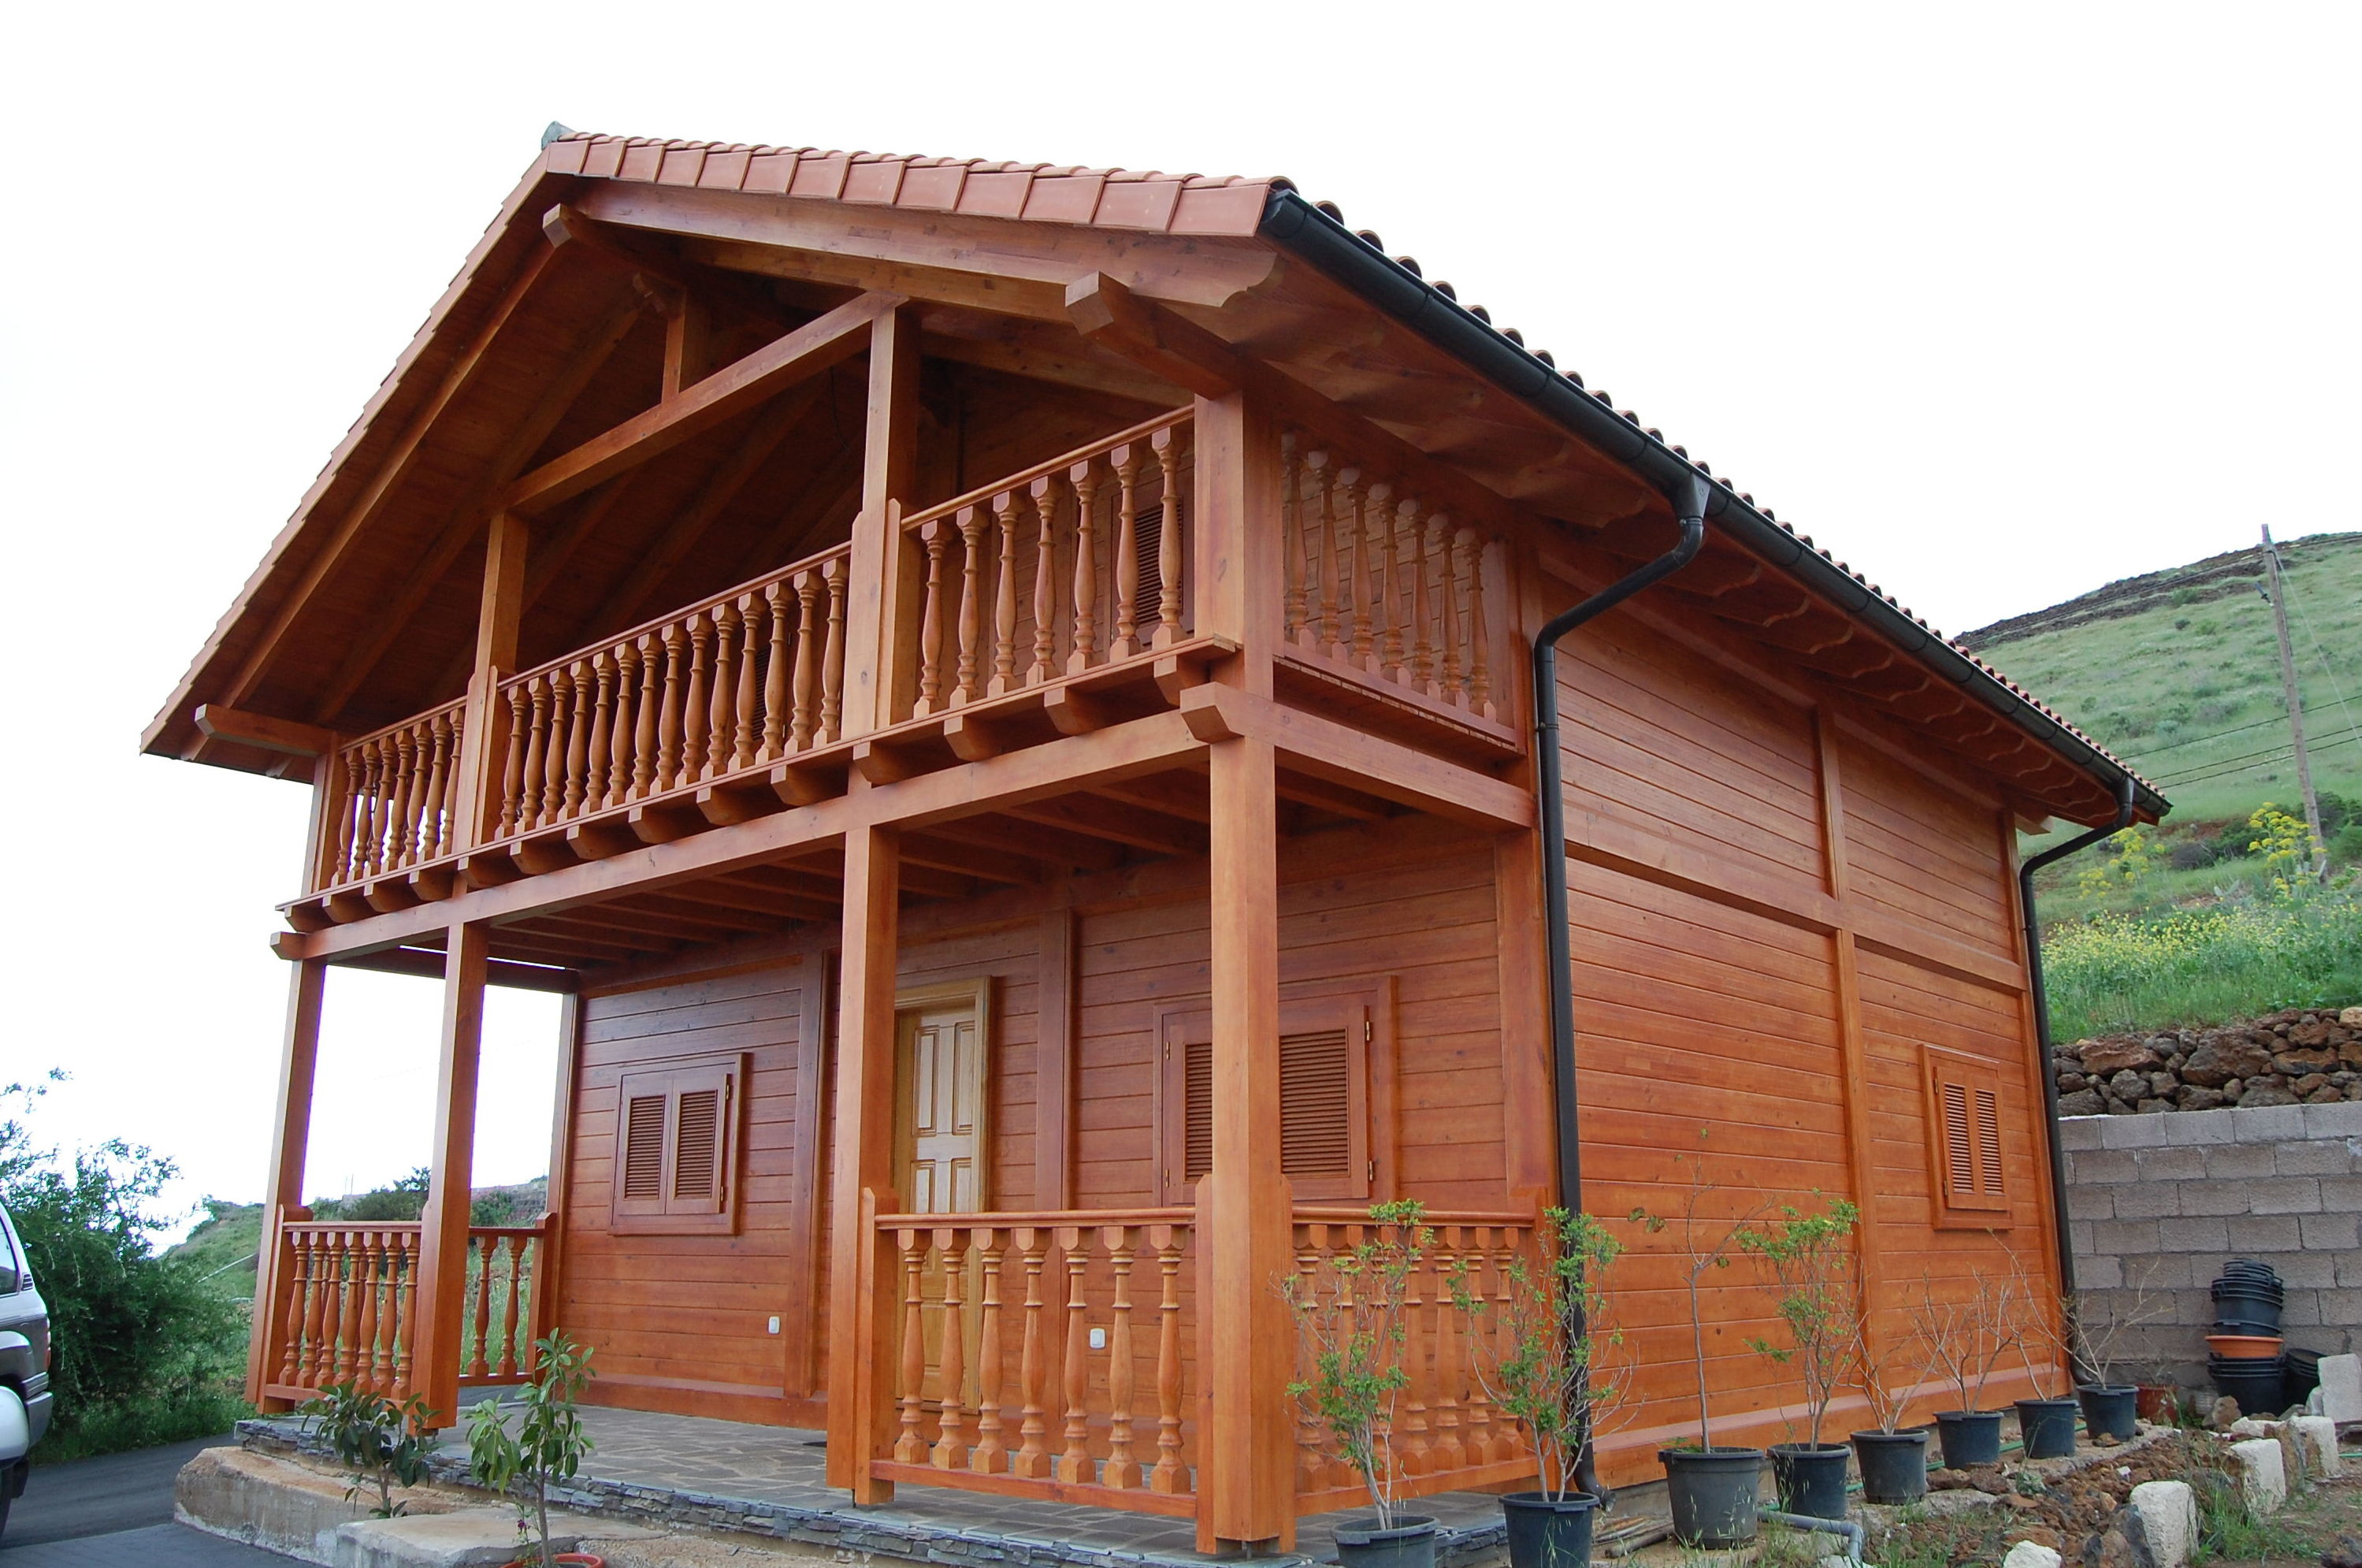 Foto 7 de Casas de madera en Tacoronte  Cortelima